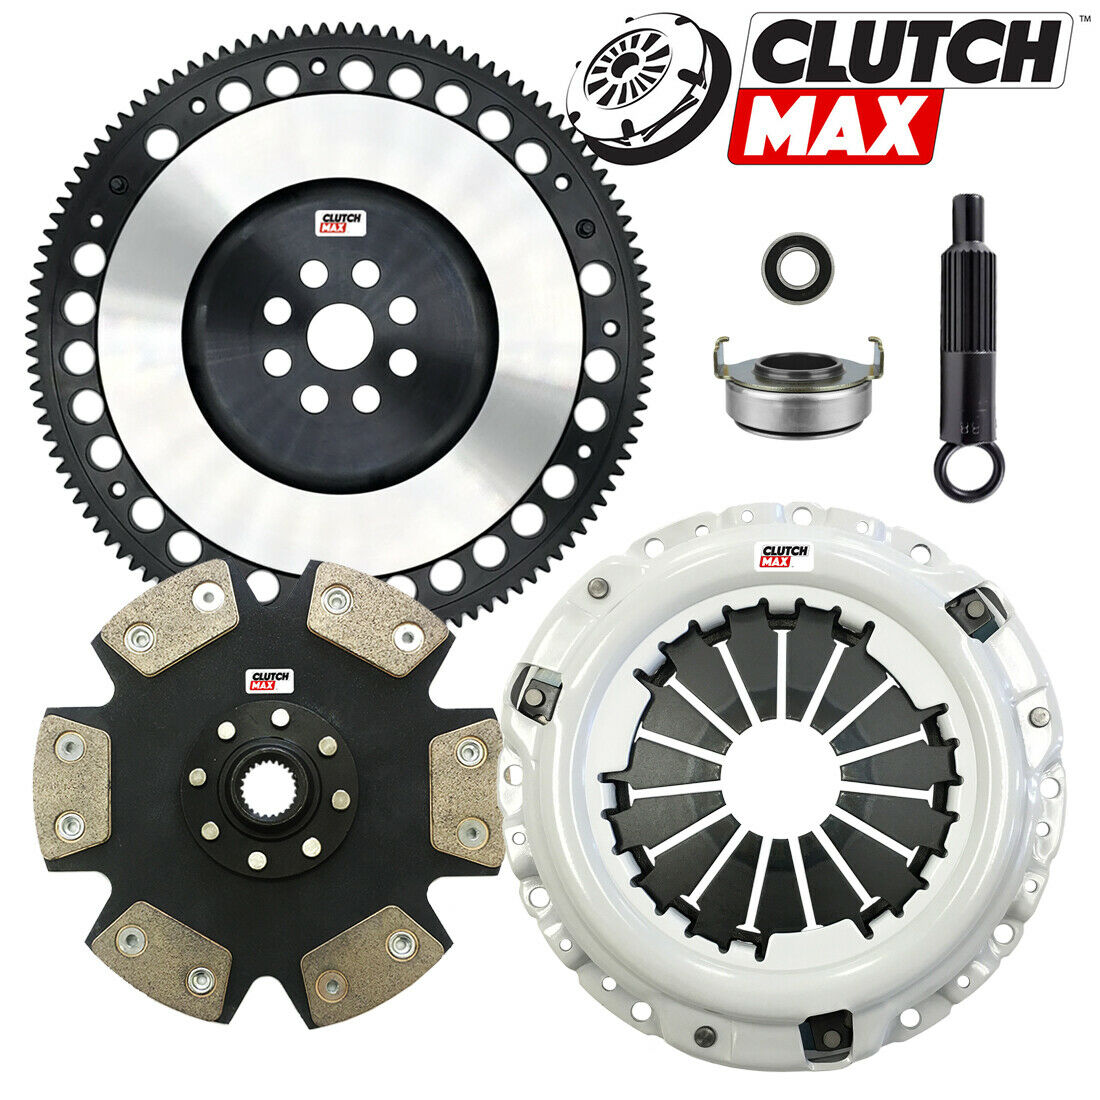 Clutchmax Stage 5 Clutch Kit+chromoly Flywheel For Acura Honda B16 B18 B20 Hydro